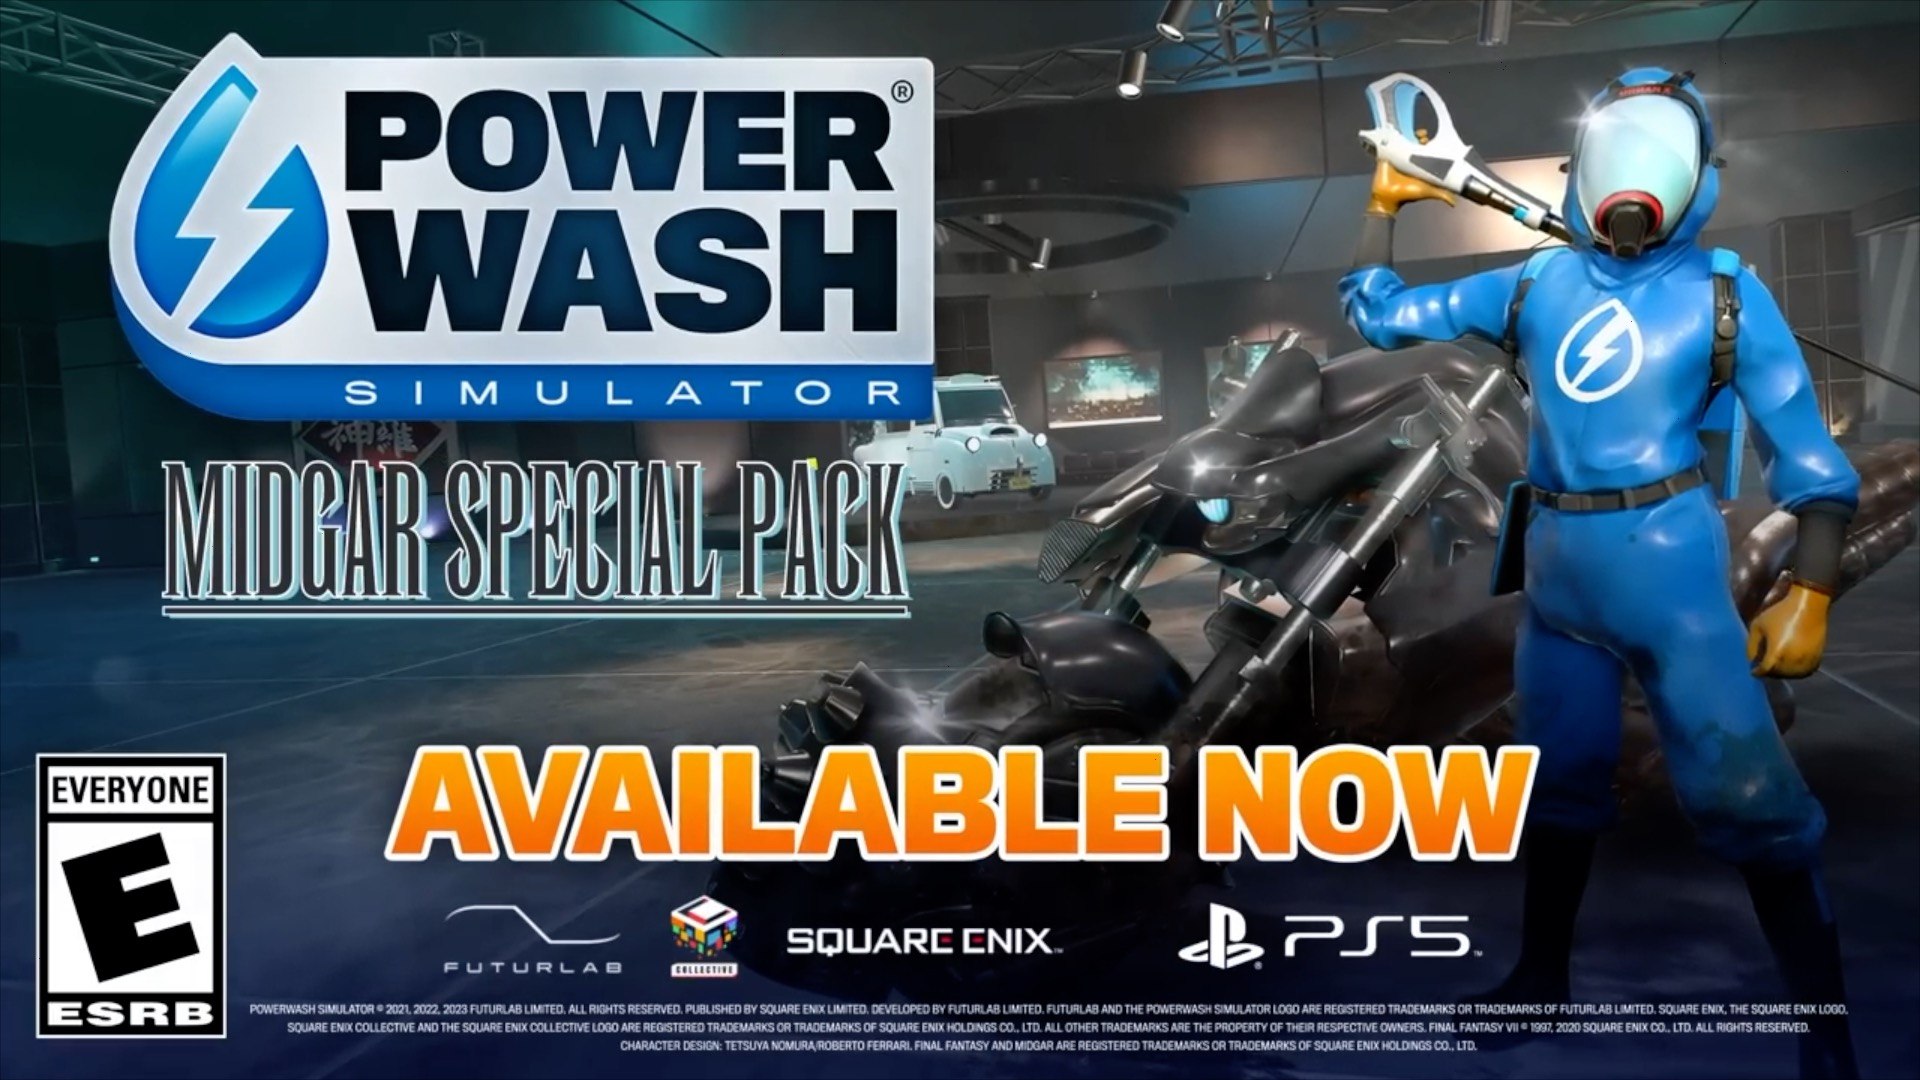 PowerWash Simulator SpongeBob SquarePants Special Pack Digital